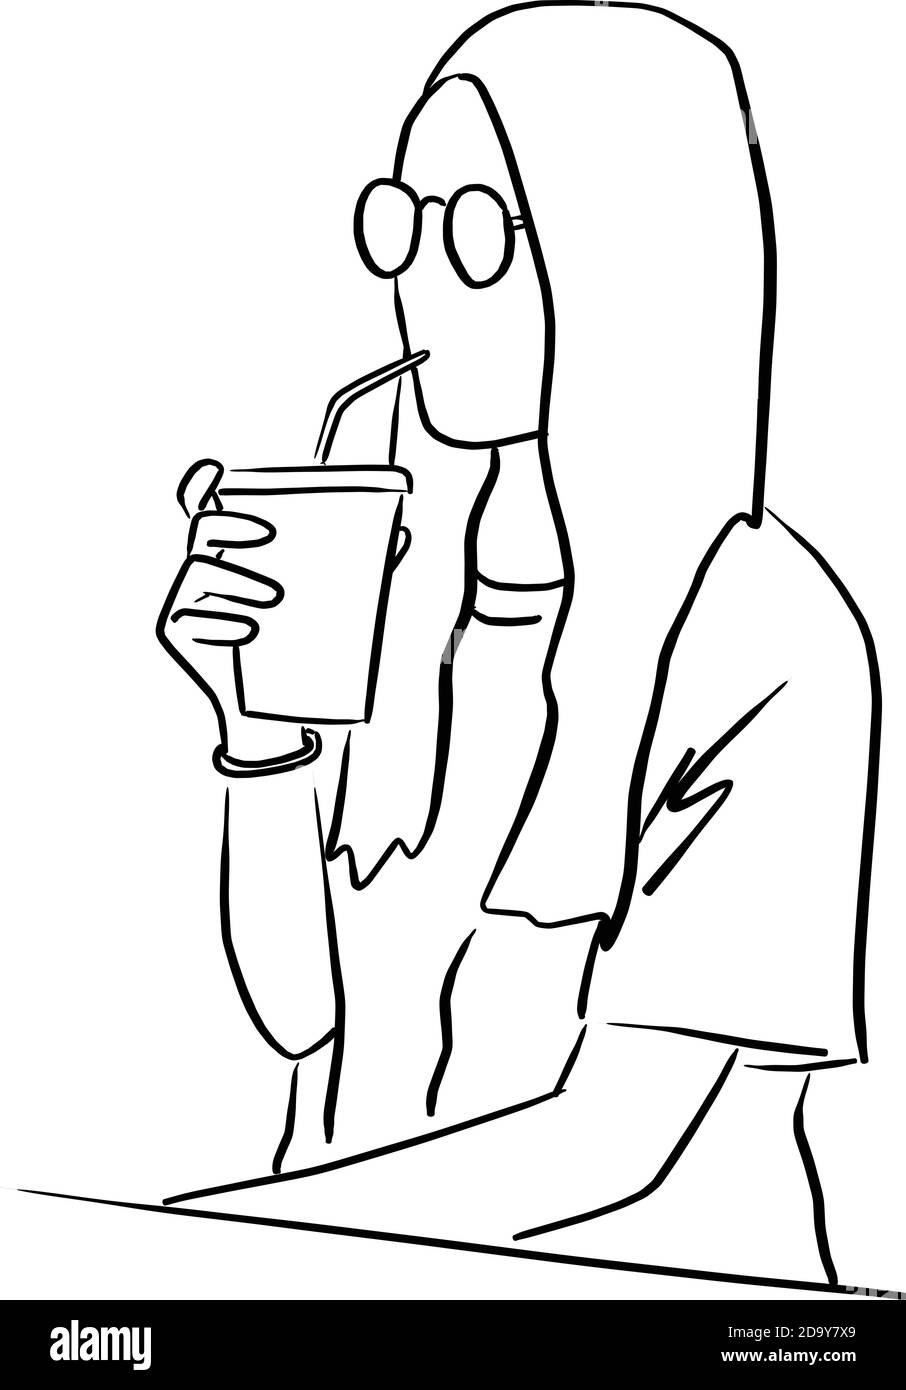 donna con bicchieri che beve caffè freddo takeaway disegno vettoriale doodle mano disegnata con linee nere isolate su sfondo bianco Illustrazione Vettoriale